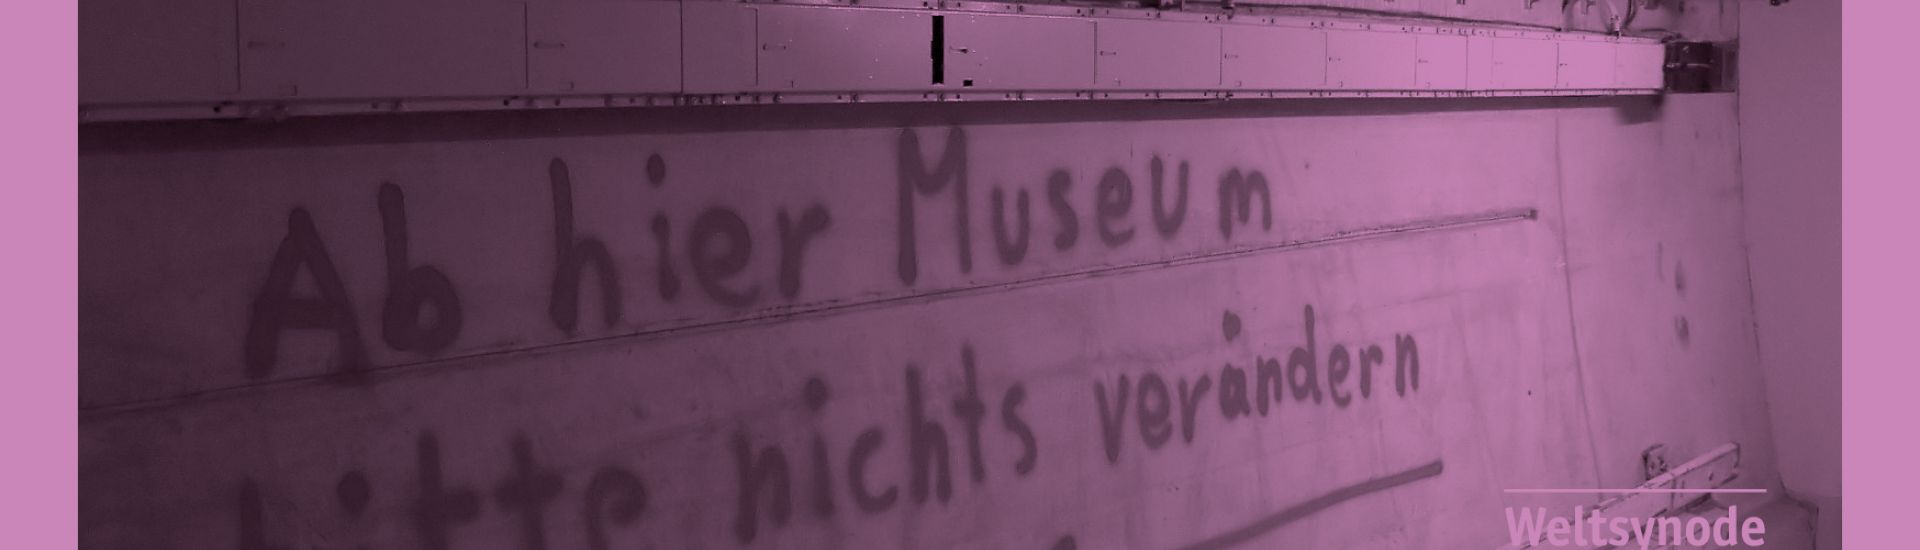 Eine Wand mit Beschriftung: Ab hier Museum, bitte nicht verändern